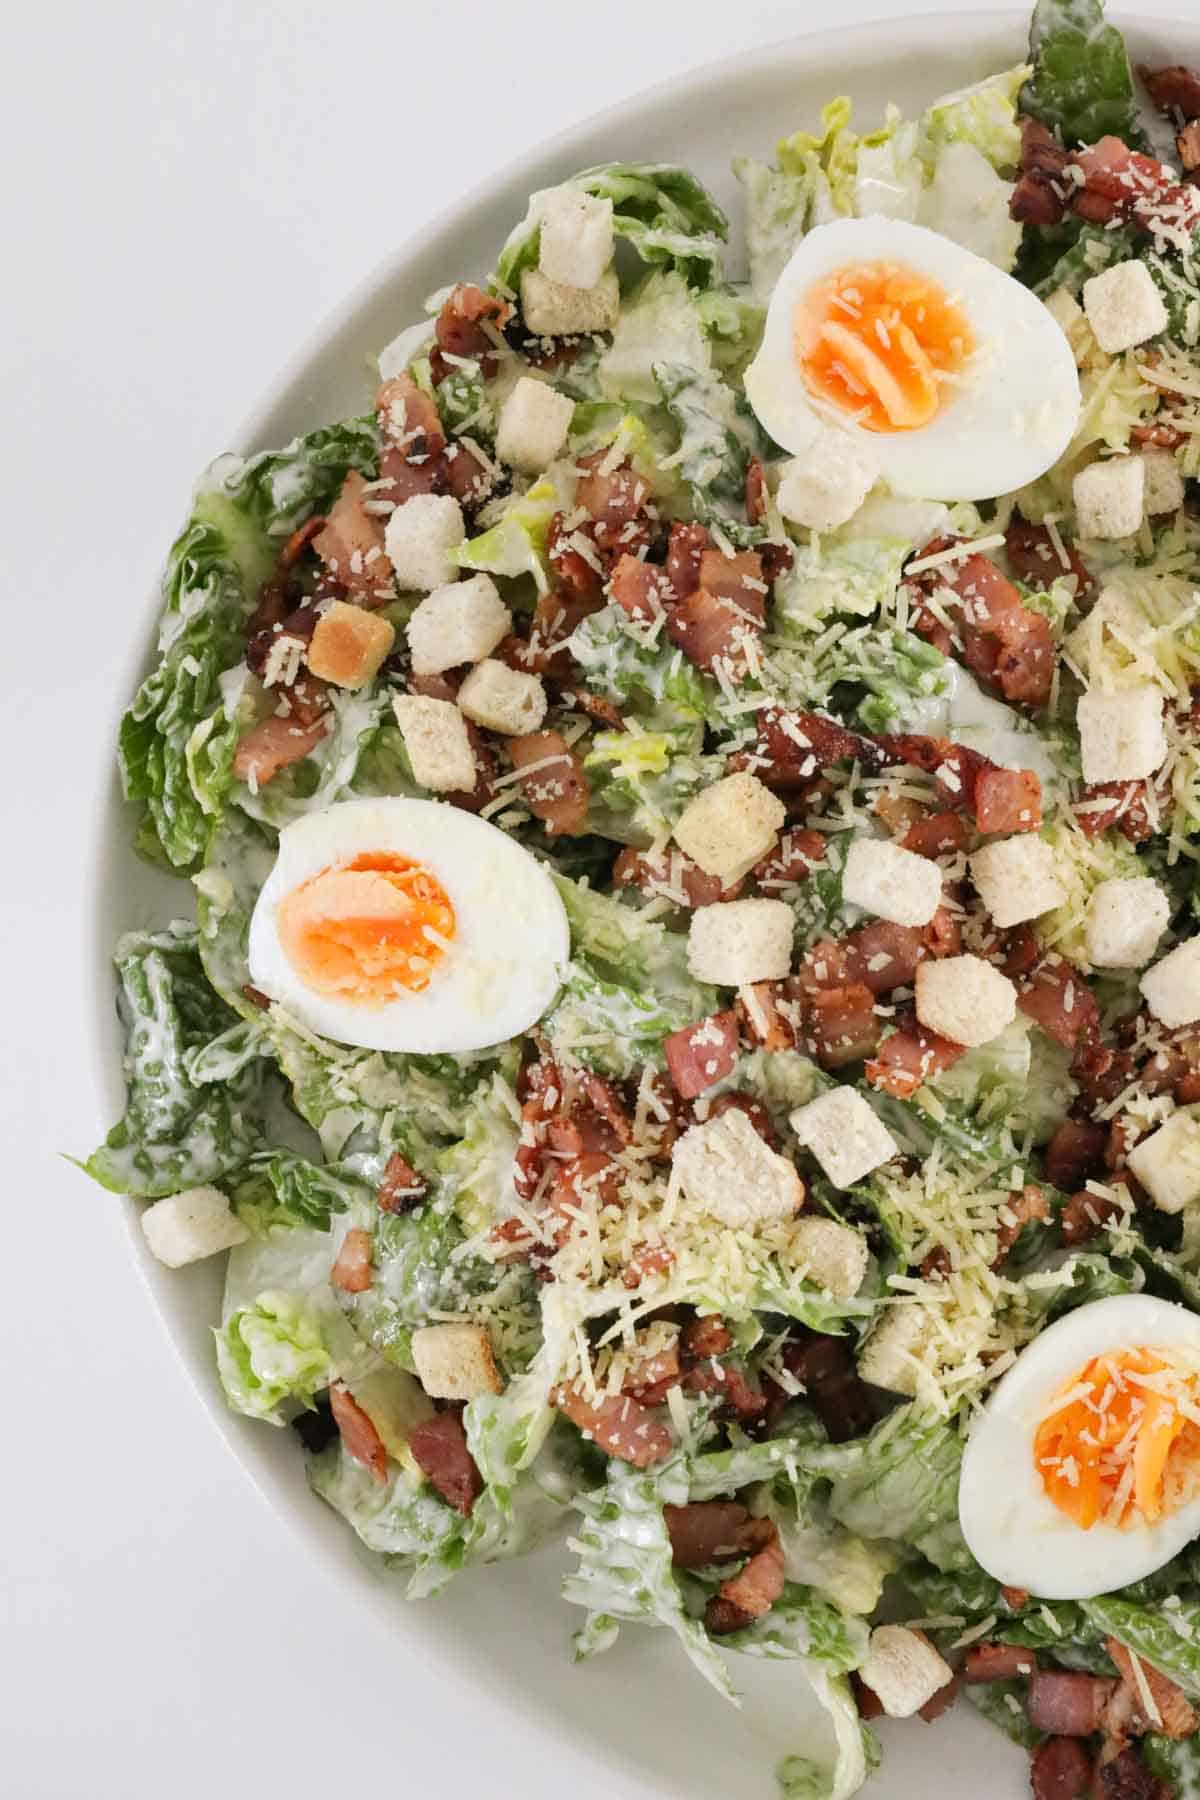 Caesar salad on a plate.